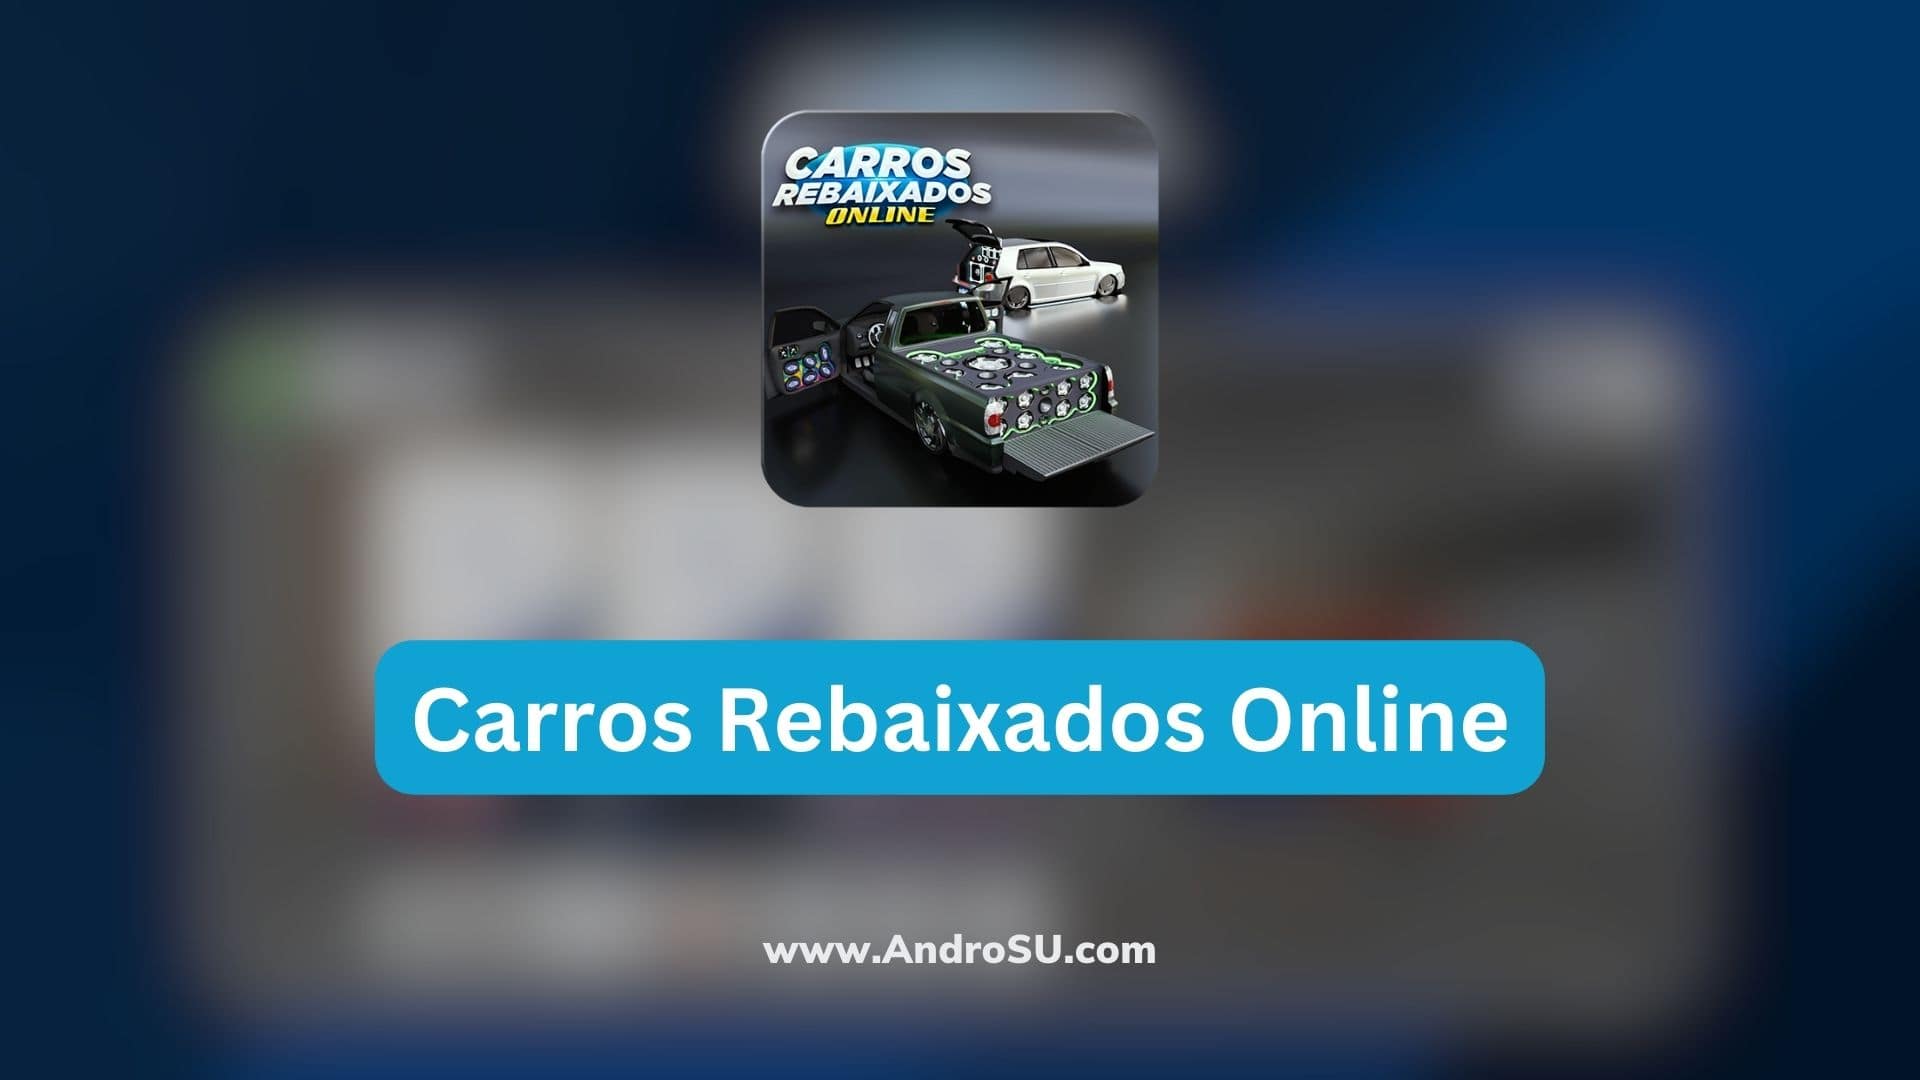 Carros Rebaixados Online - Cro安卓版应用APK下载